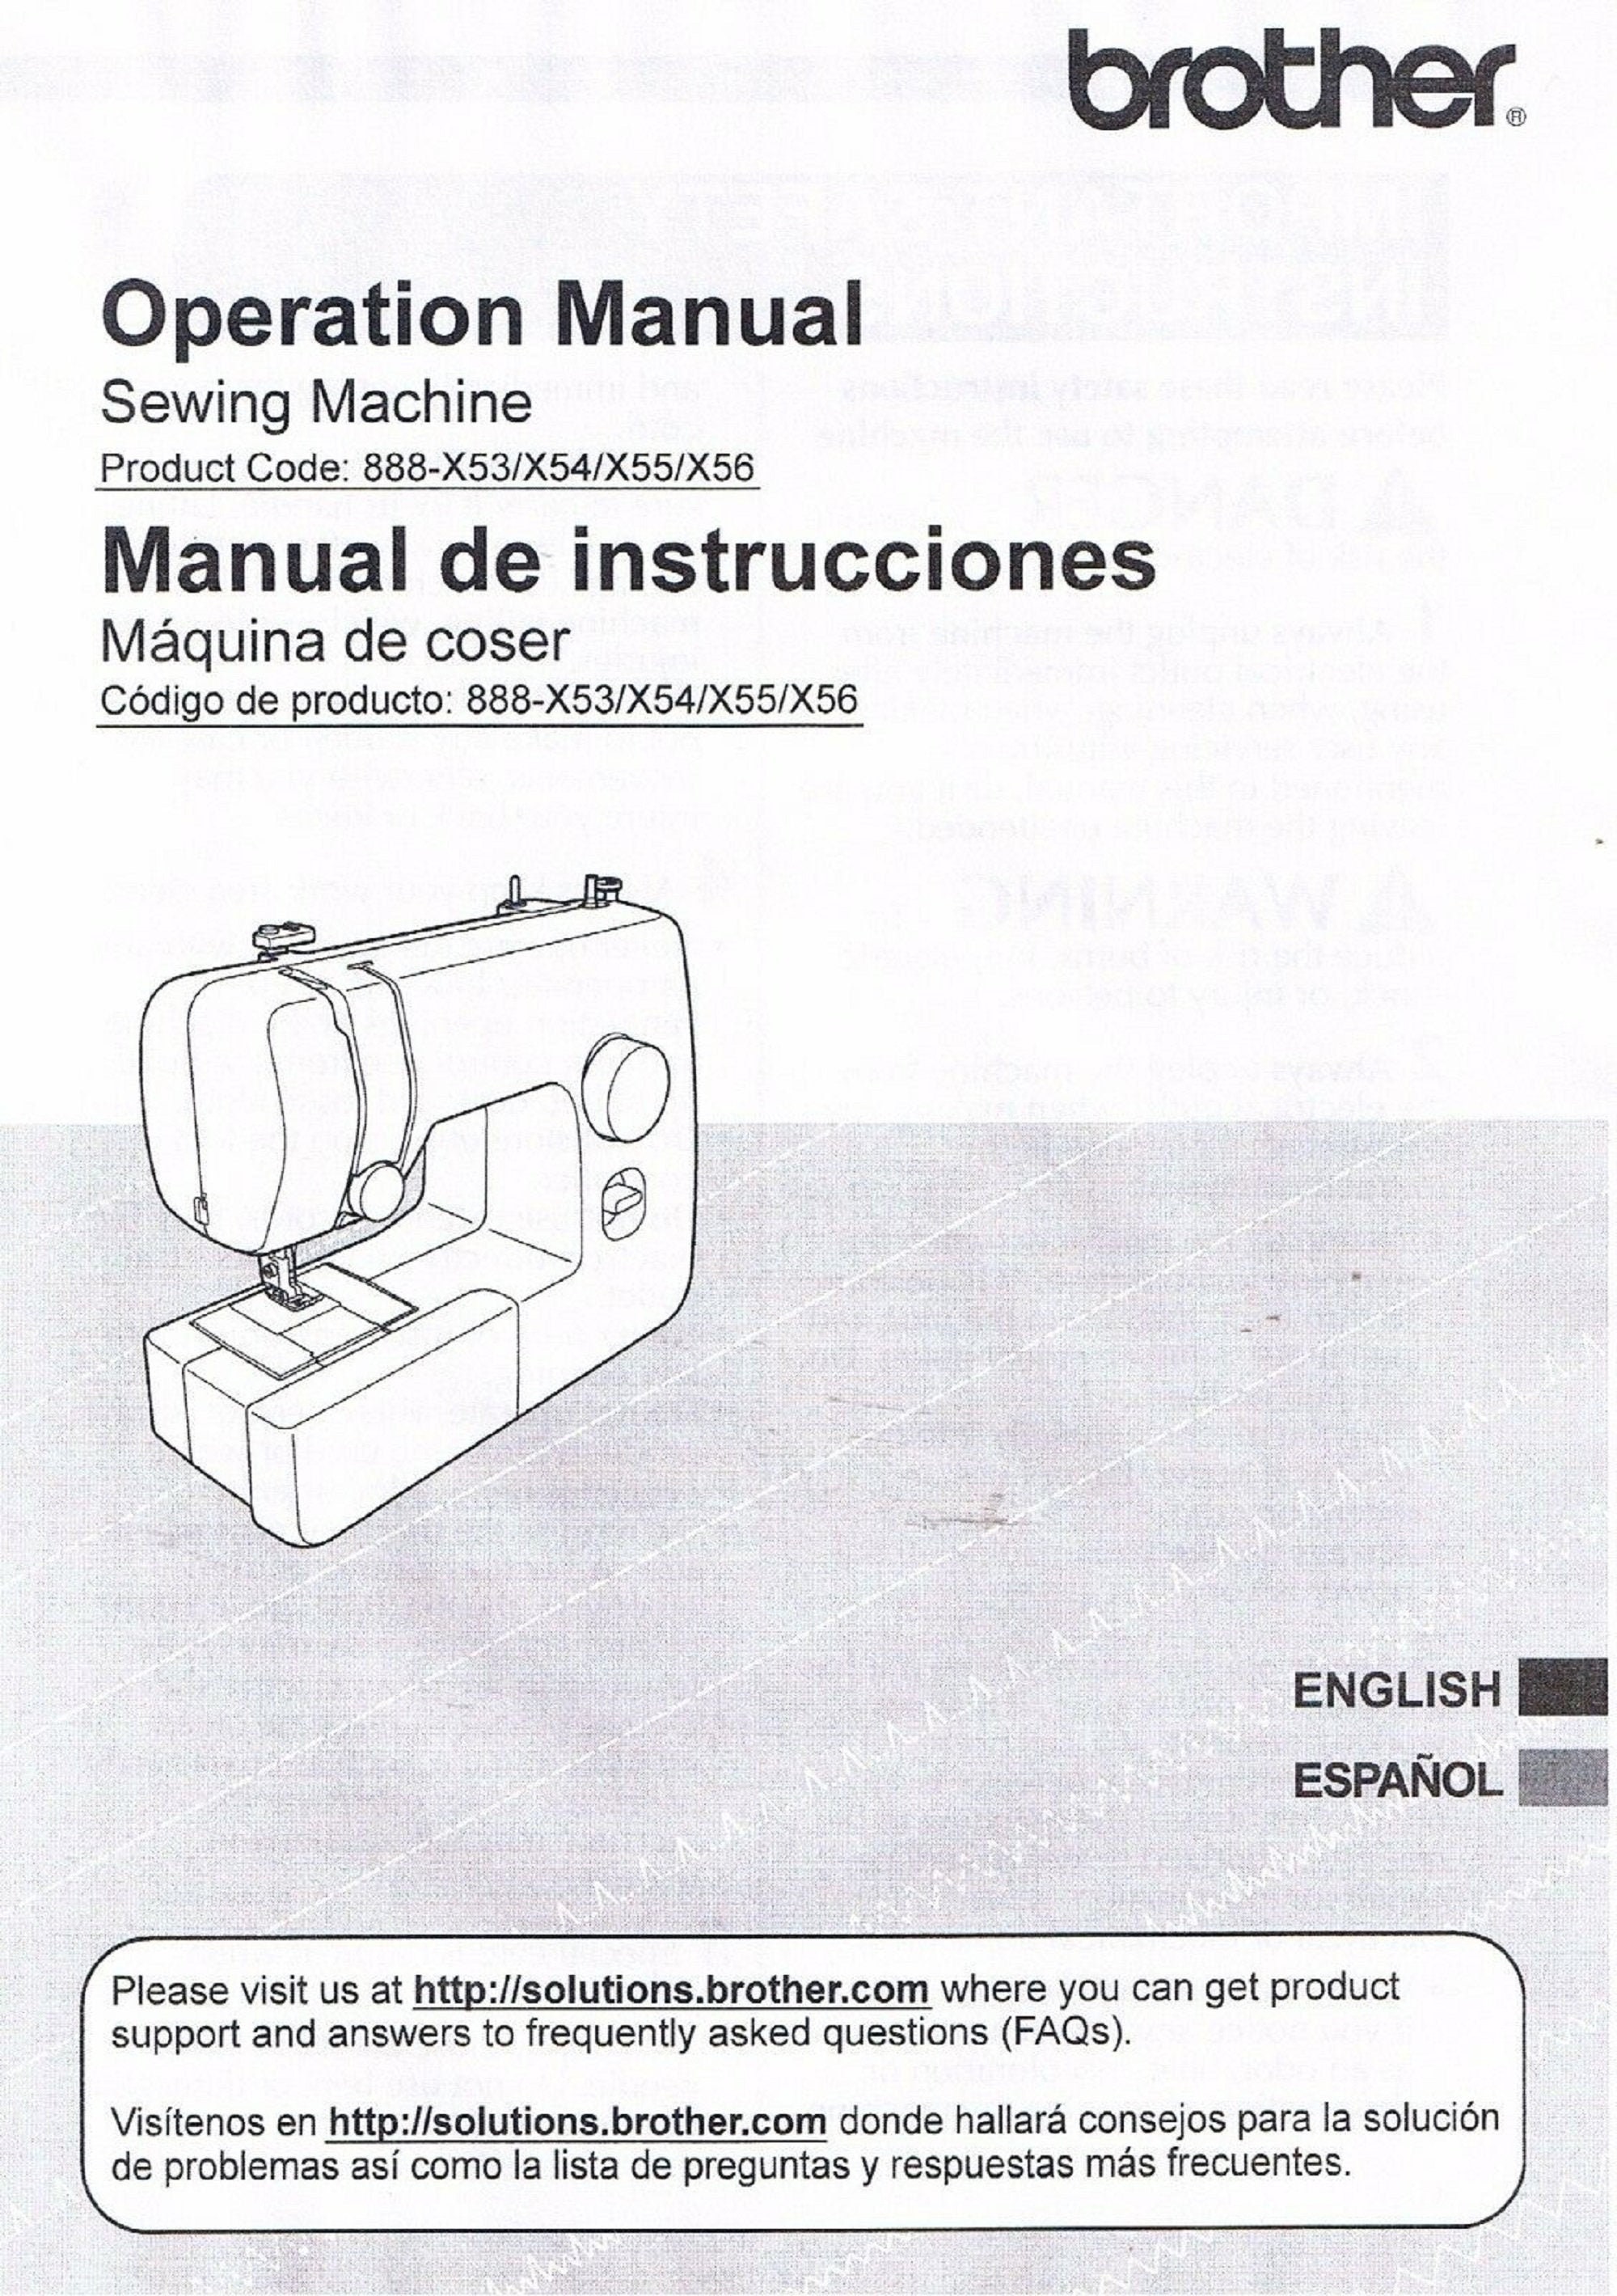 Инструкция бротхер. Швейная машинка brother x4. Машина швейная operating instruction. Швейная машинка brother 1400. Инструкция по швейной машинке бротхер.